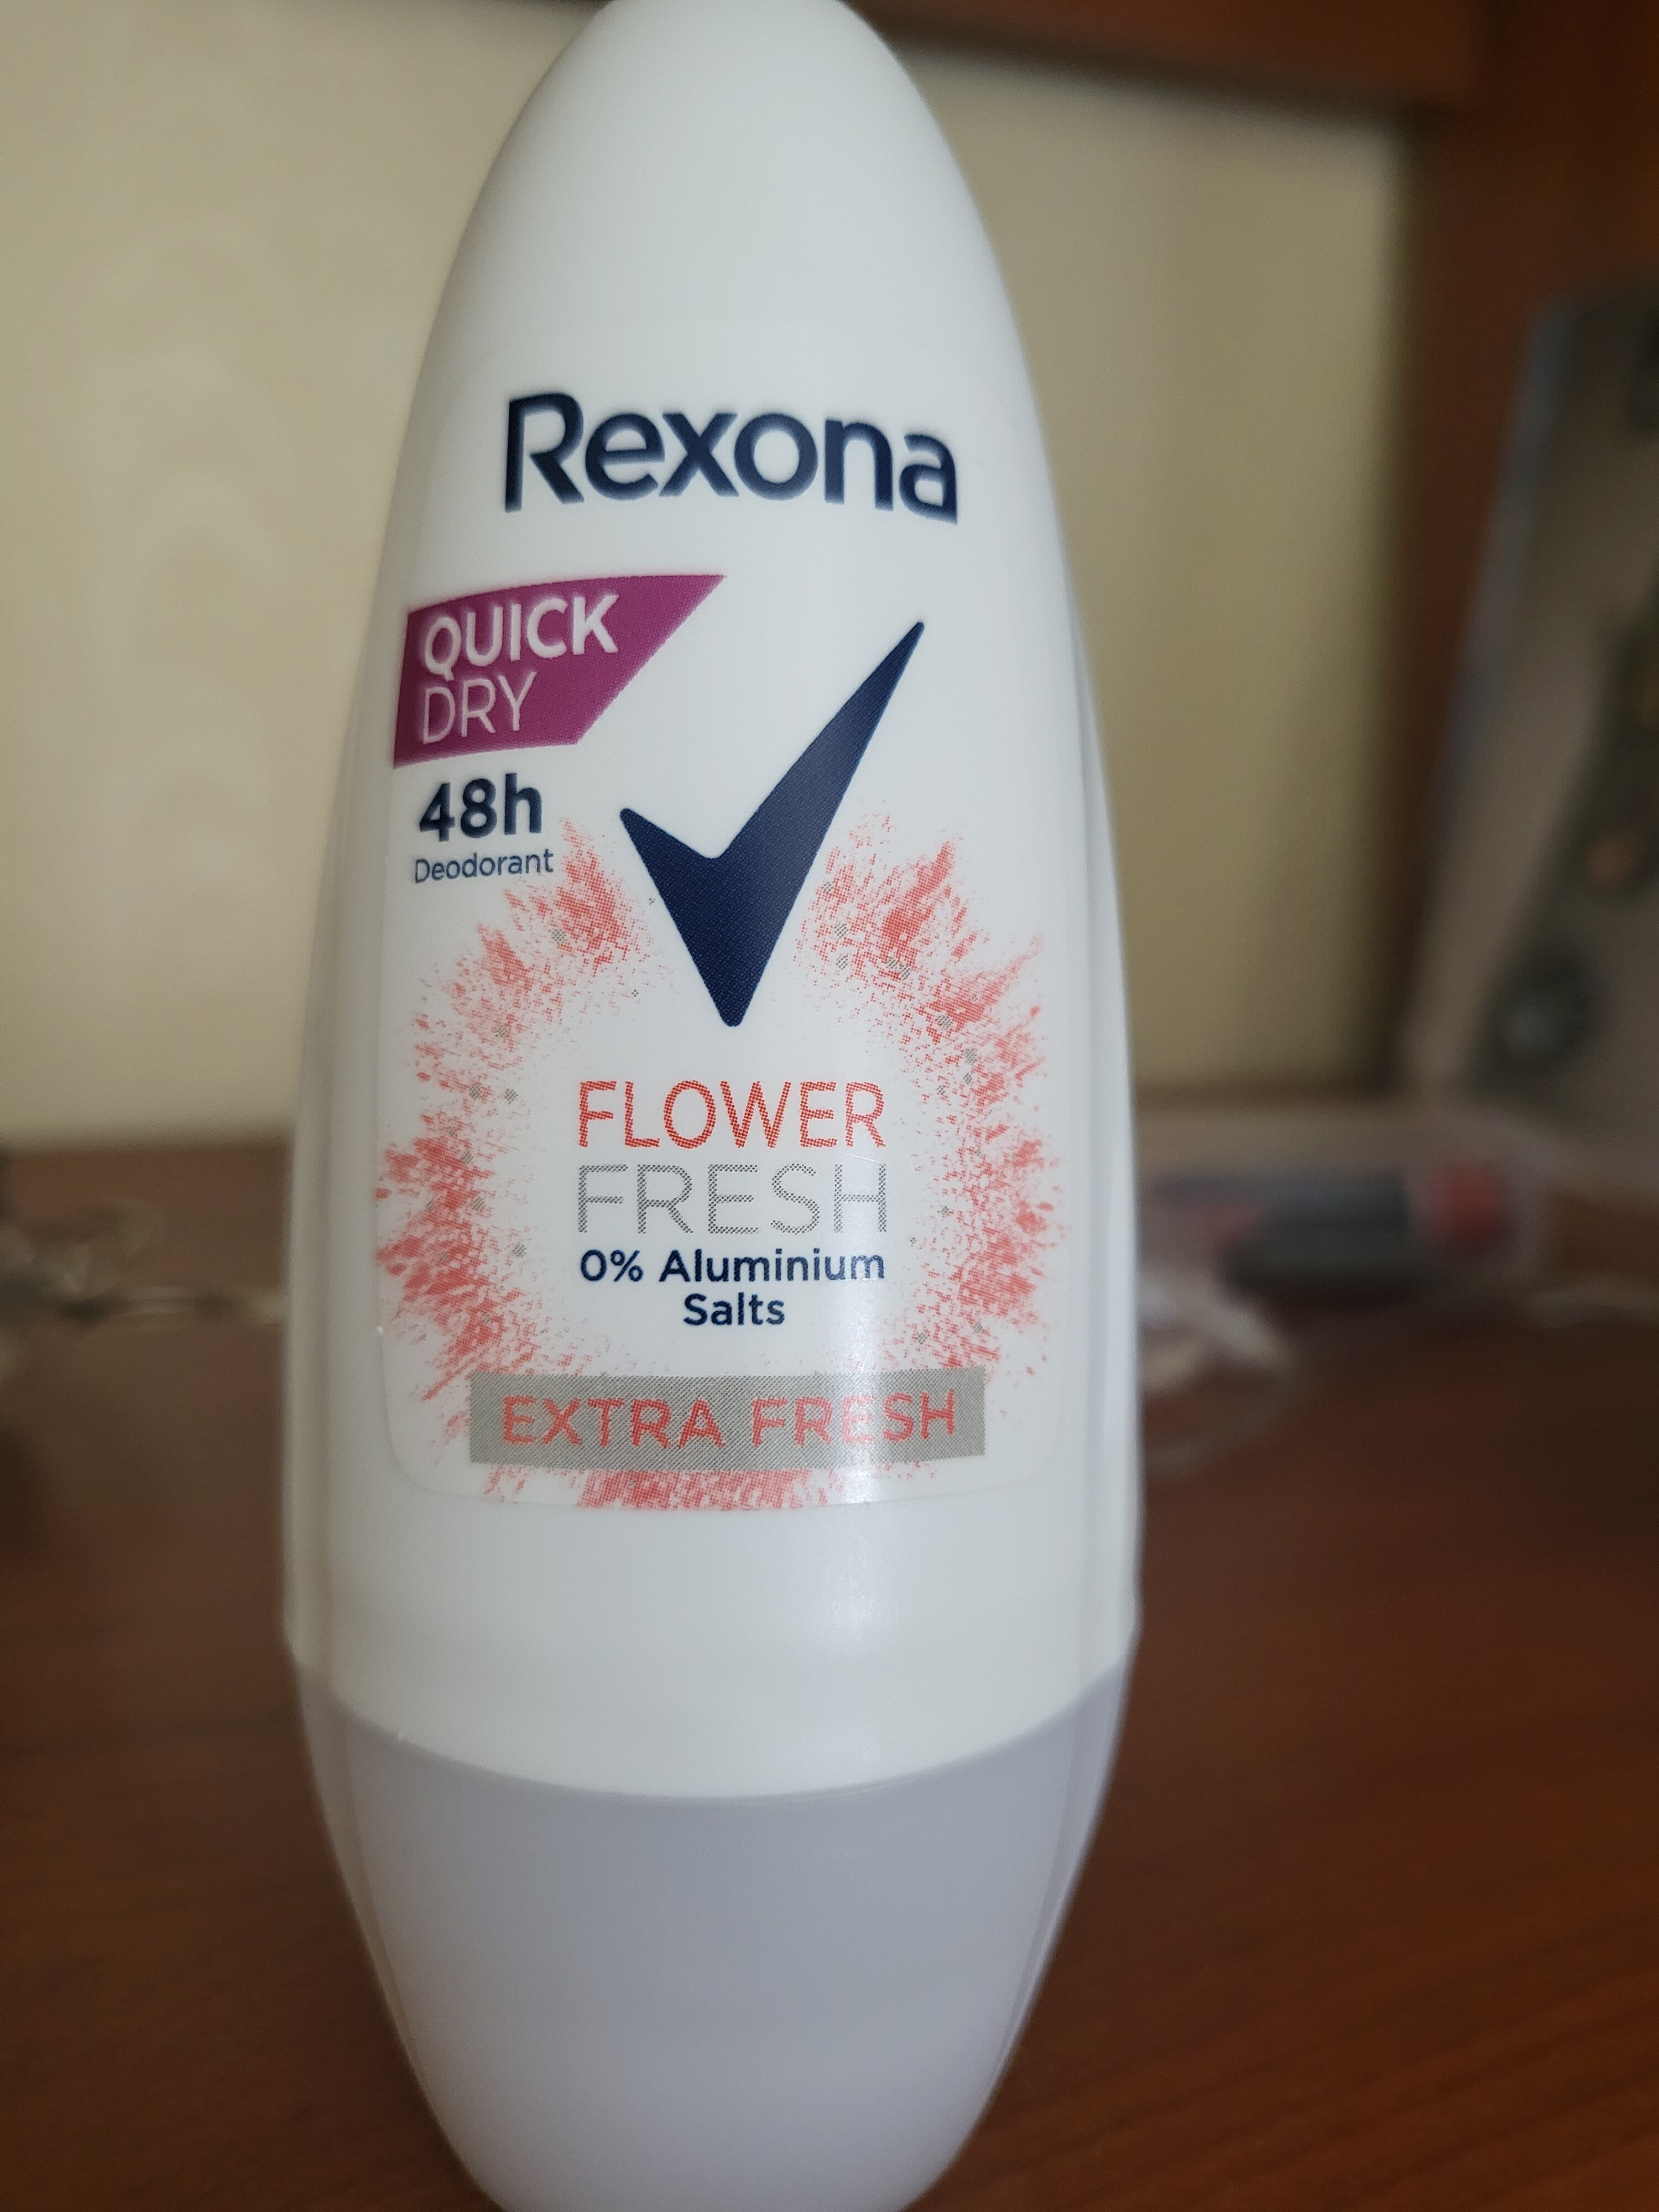 Rexona Deo - Product - en